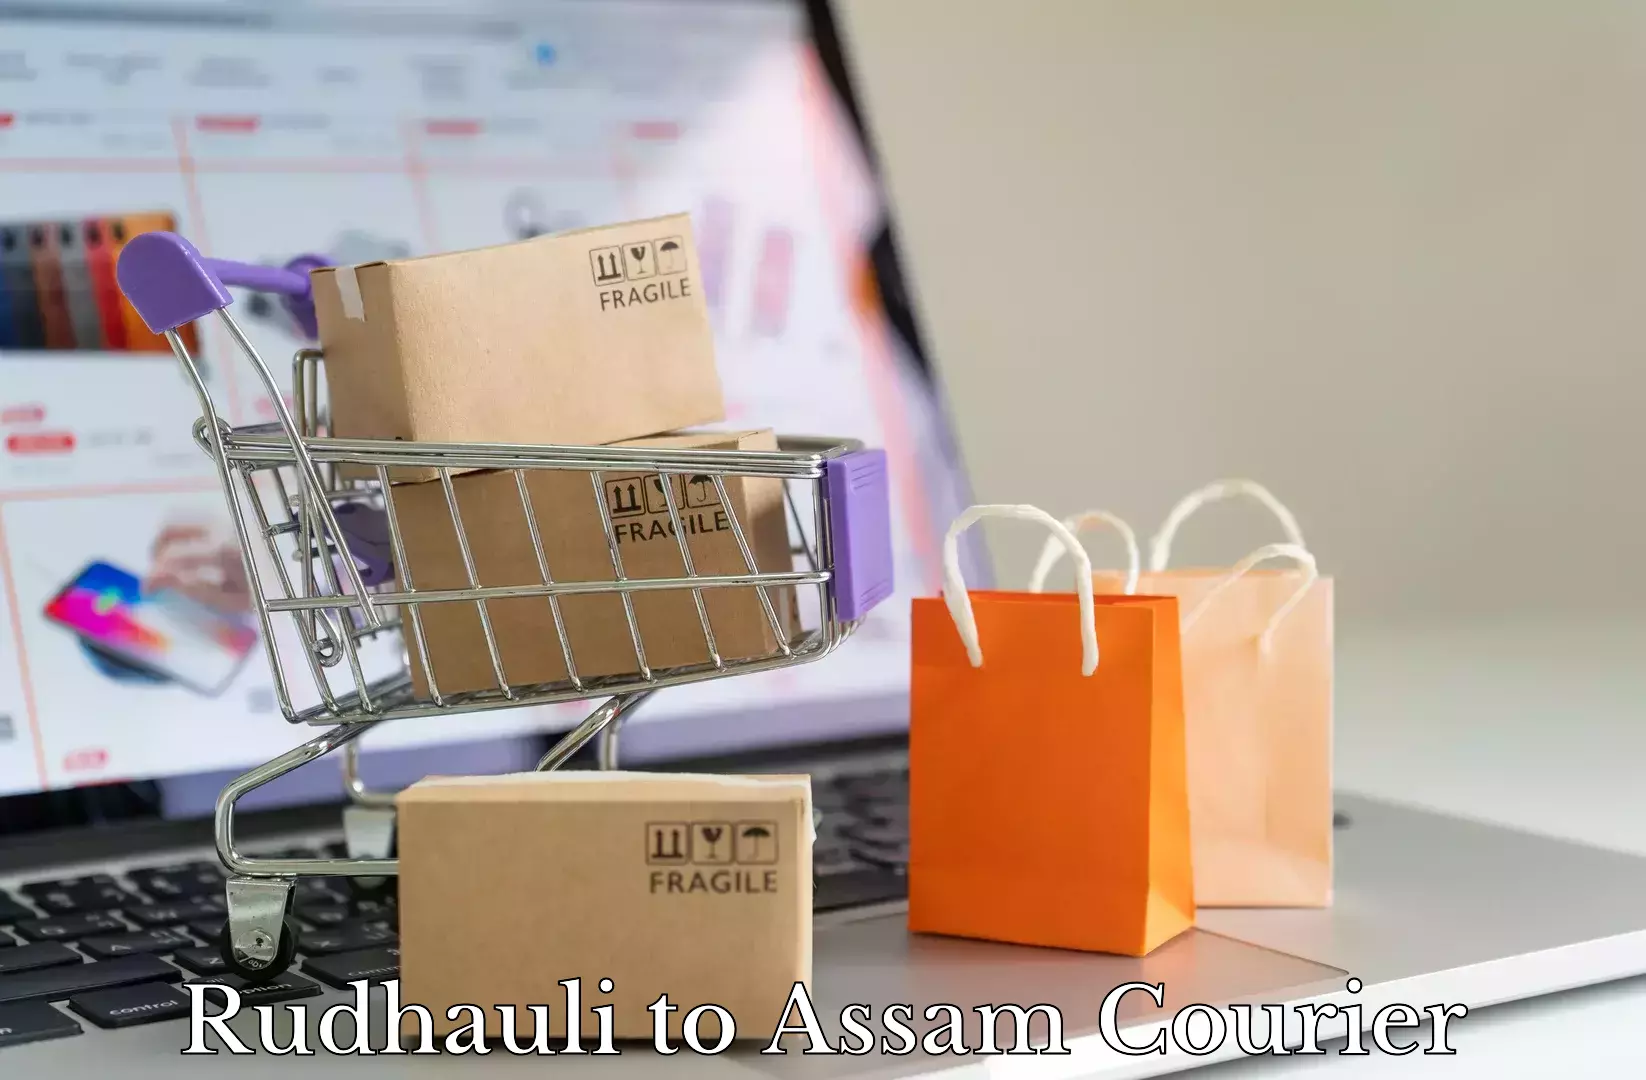 Premium moving services Rudhauli to Assam